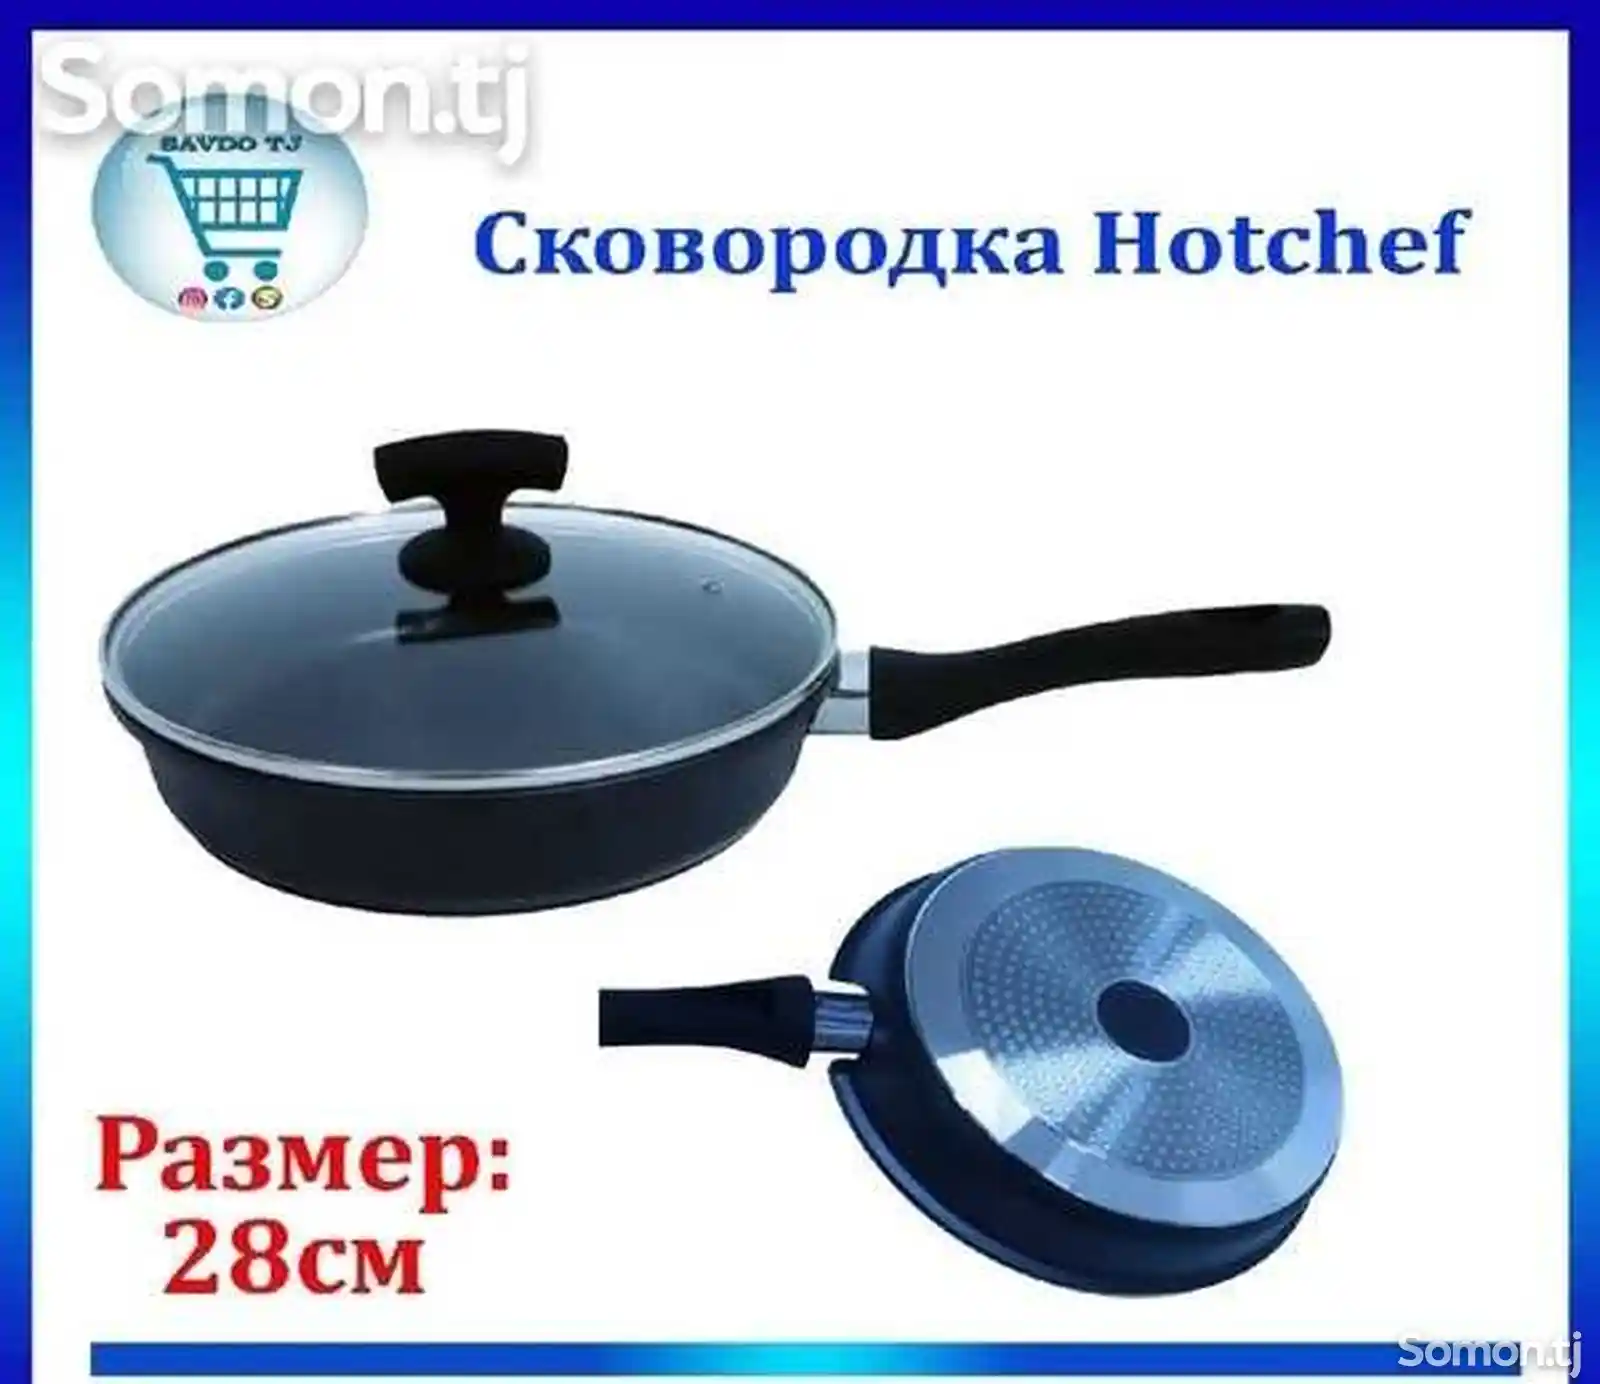 Сковородка Hotchef-4